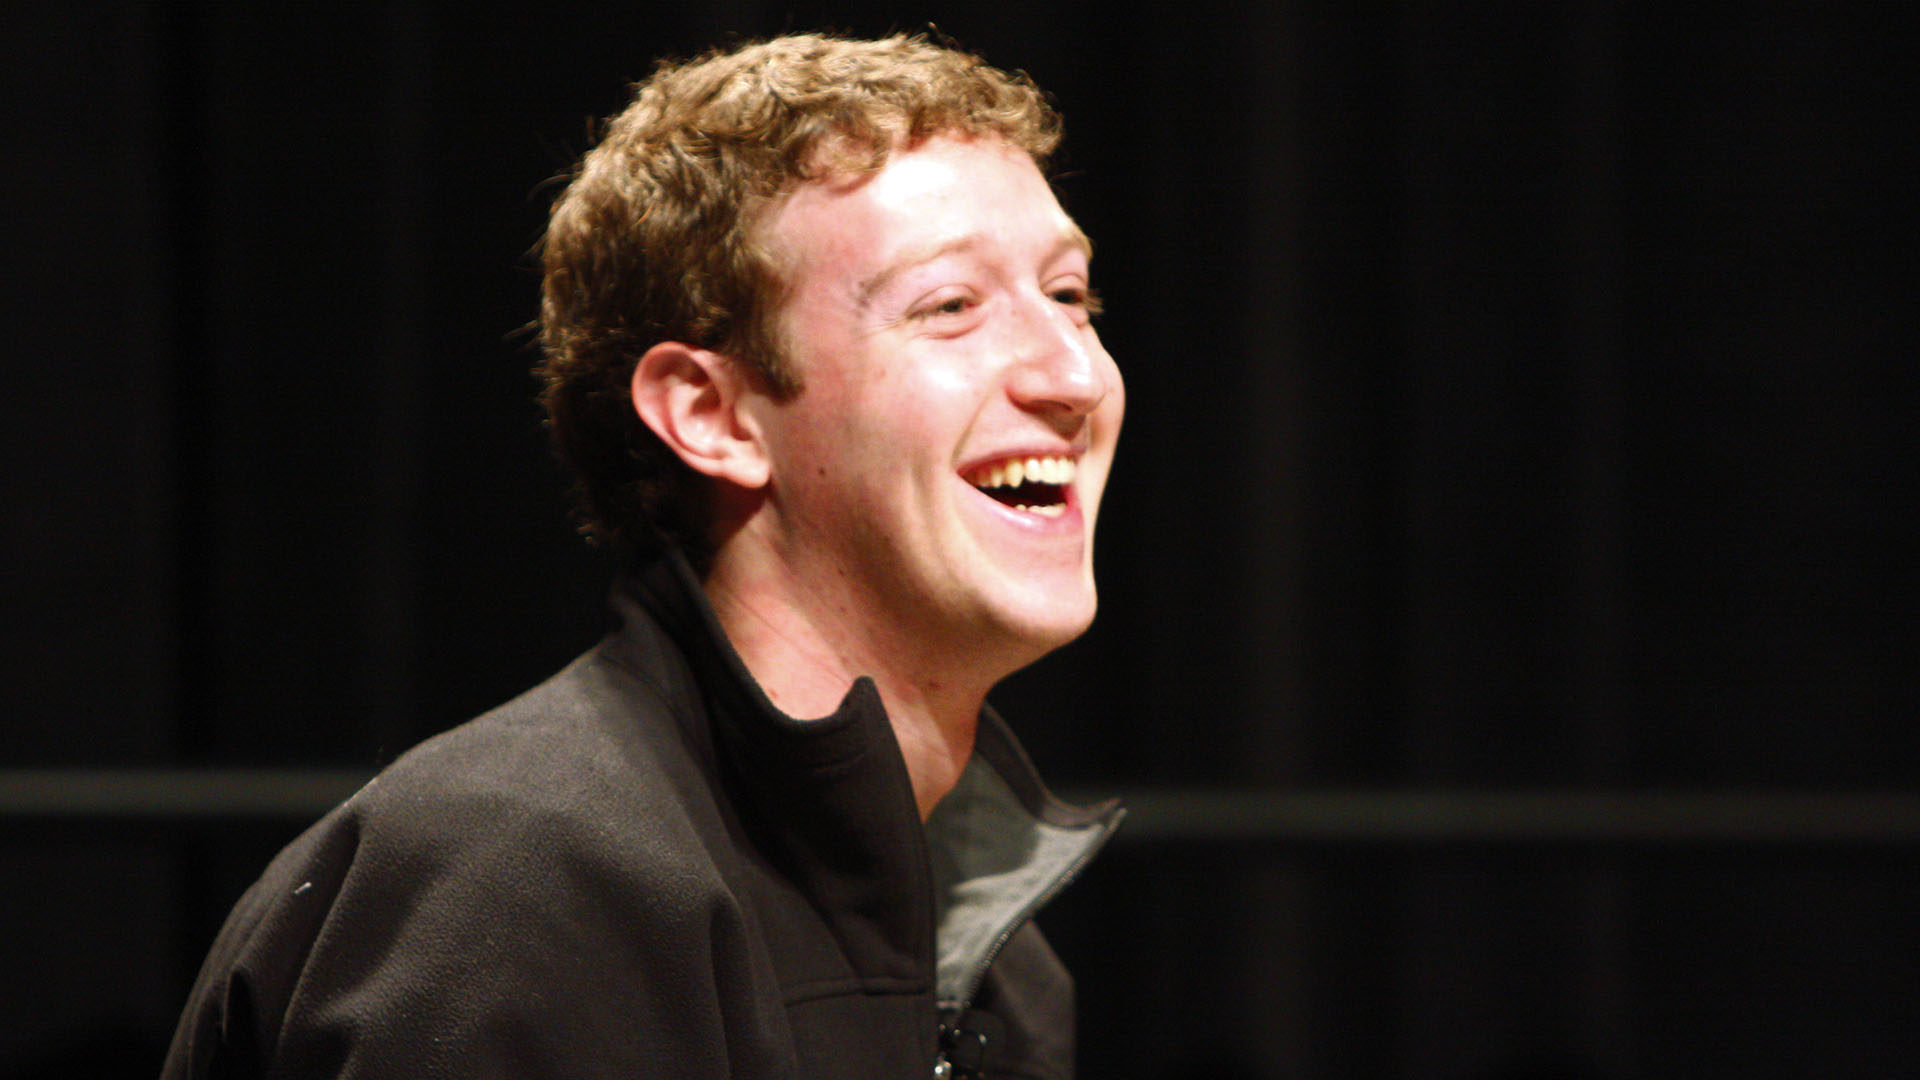 Le fondateur de Facebook Mark Zuckerberg, a été reçu en audiance par le pape François dans la matinée du 29 août 2016. (Photo: Wikimedia Commons/Brian Solis/CC BY 2.0)